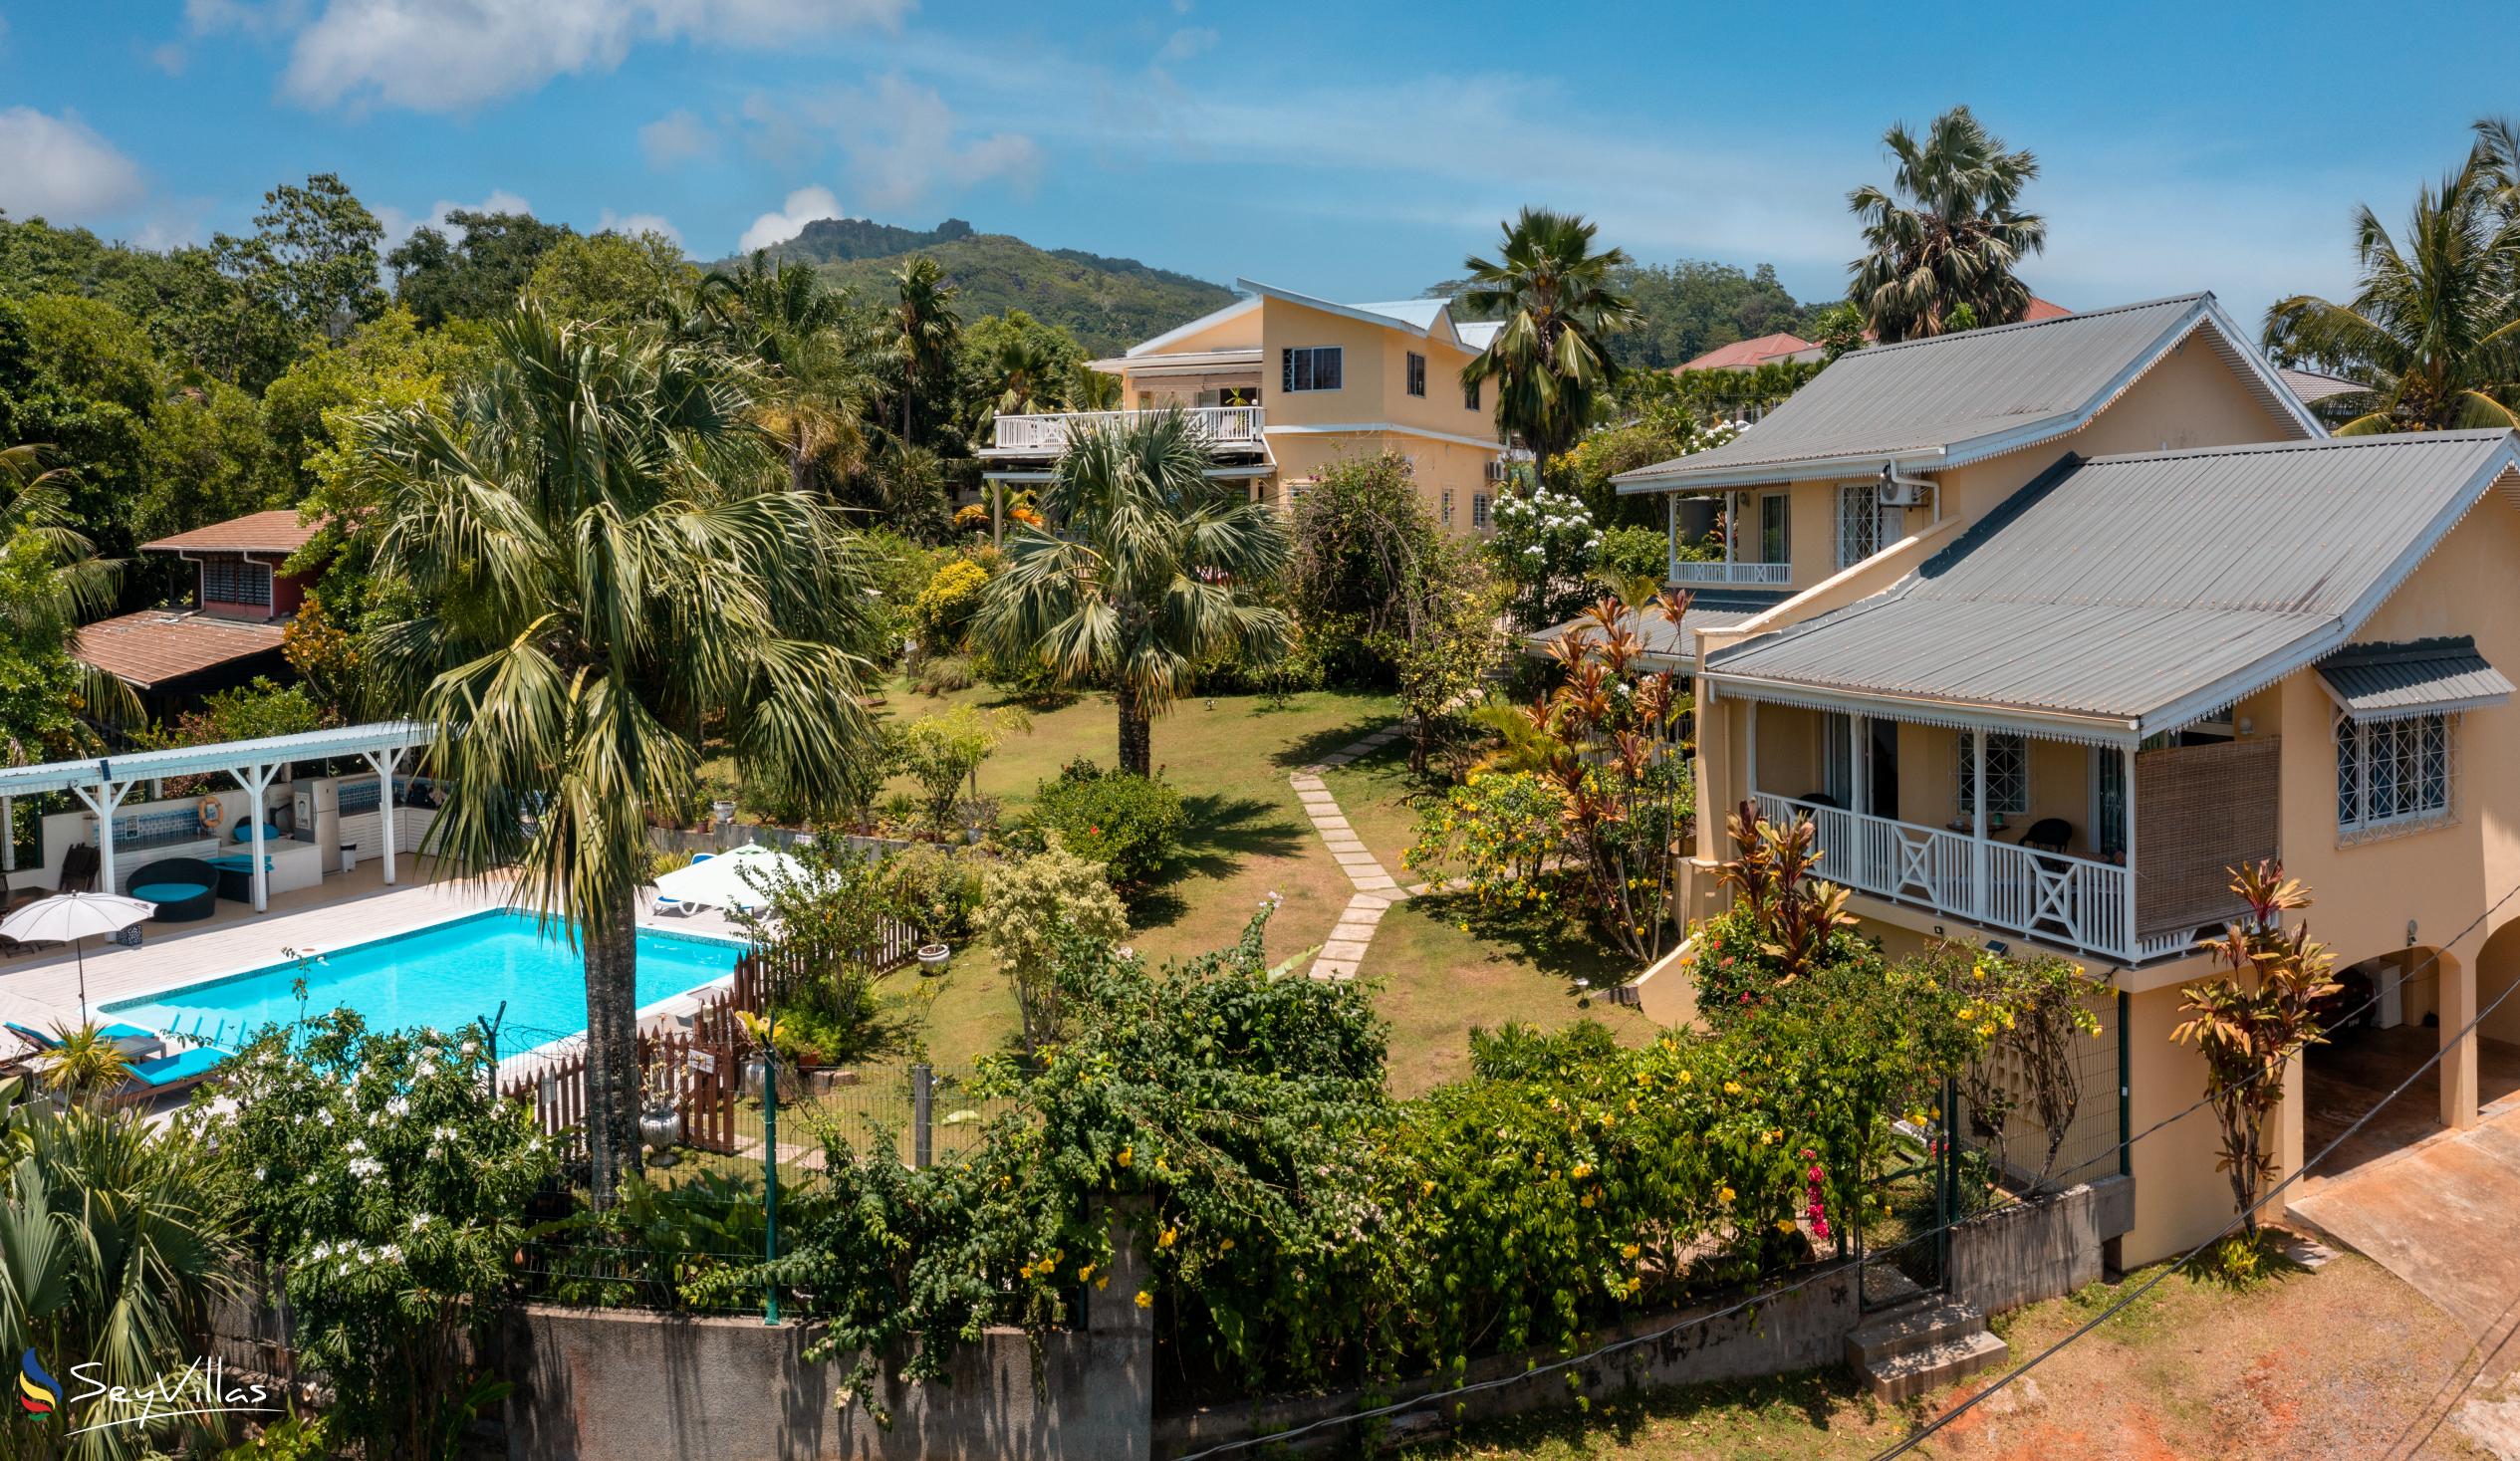 Foto 8: Residence Monte Cristo - Aussenbereich - Mahé (Seychellen)